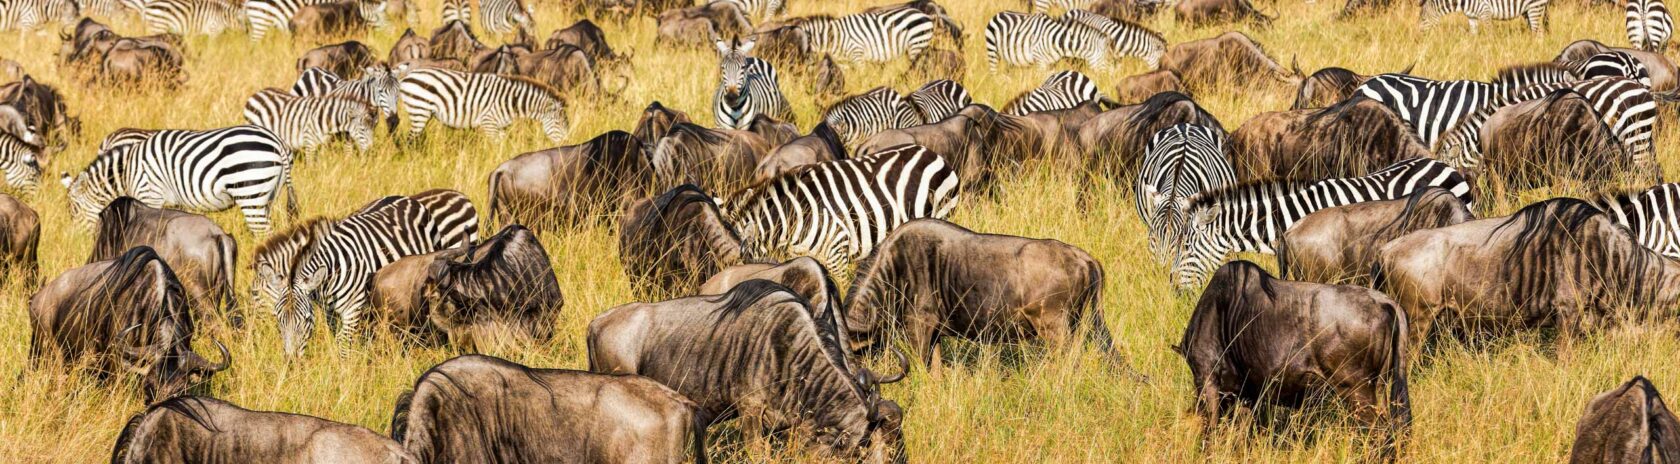 Zebras grazing in a field.